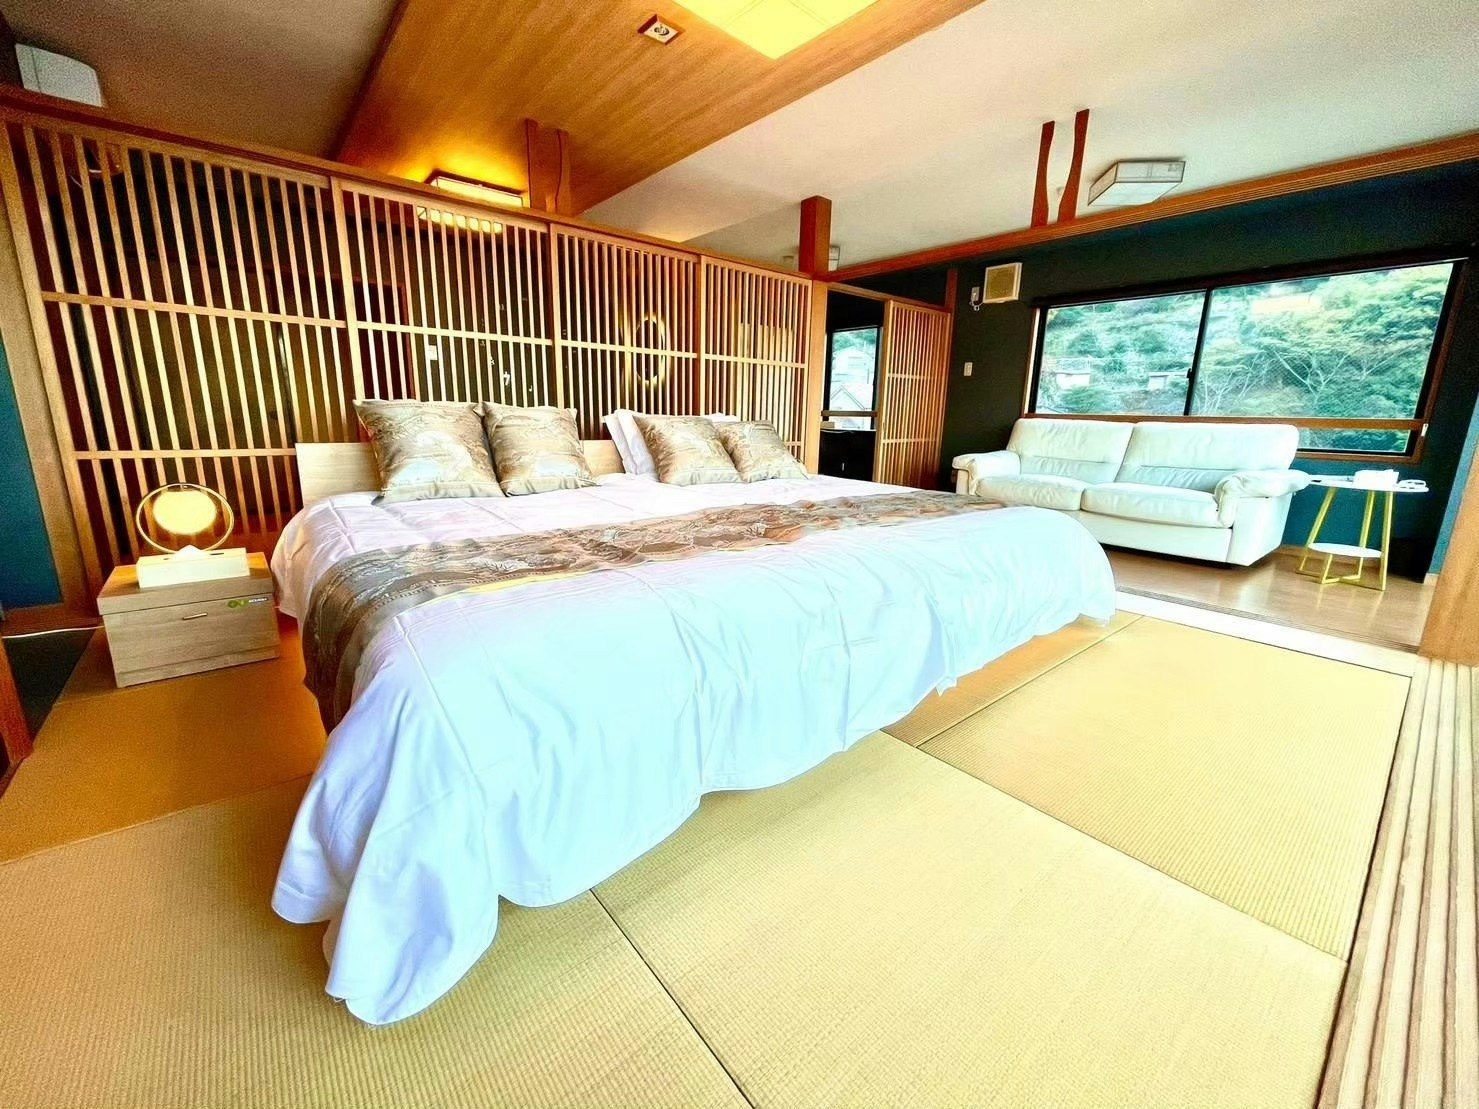 西伊豆|知る人ぞ知る美しい入江が眺める貸別荘|最大43人宿泊可能!